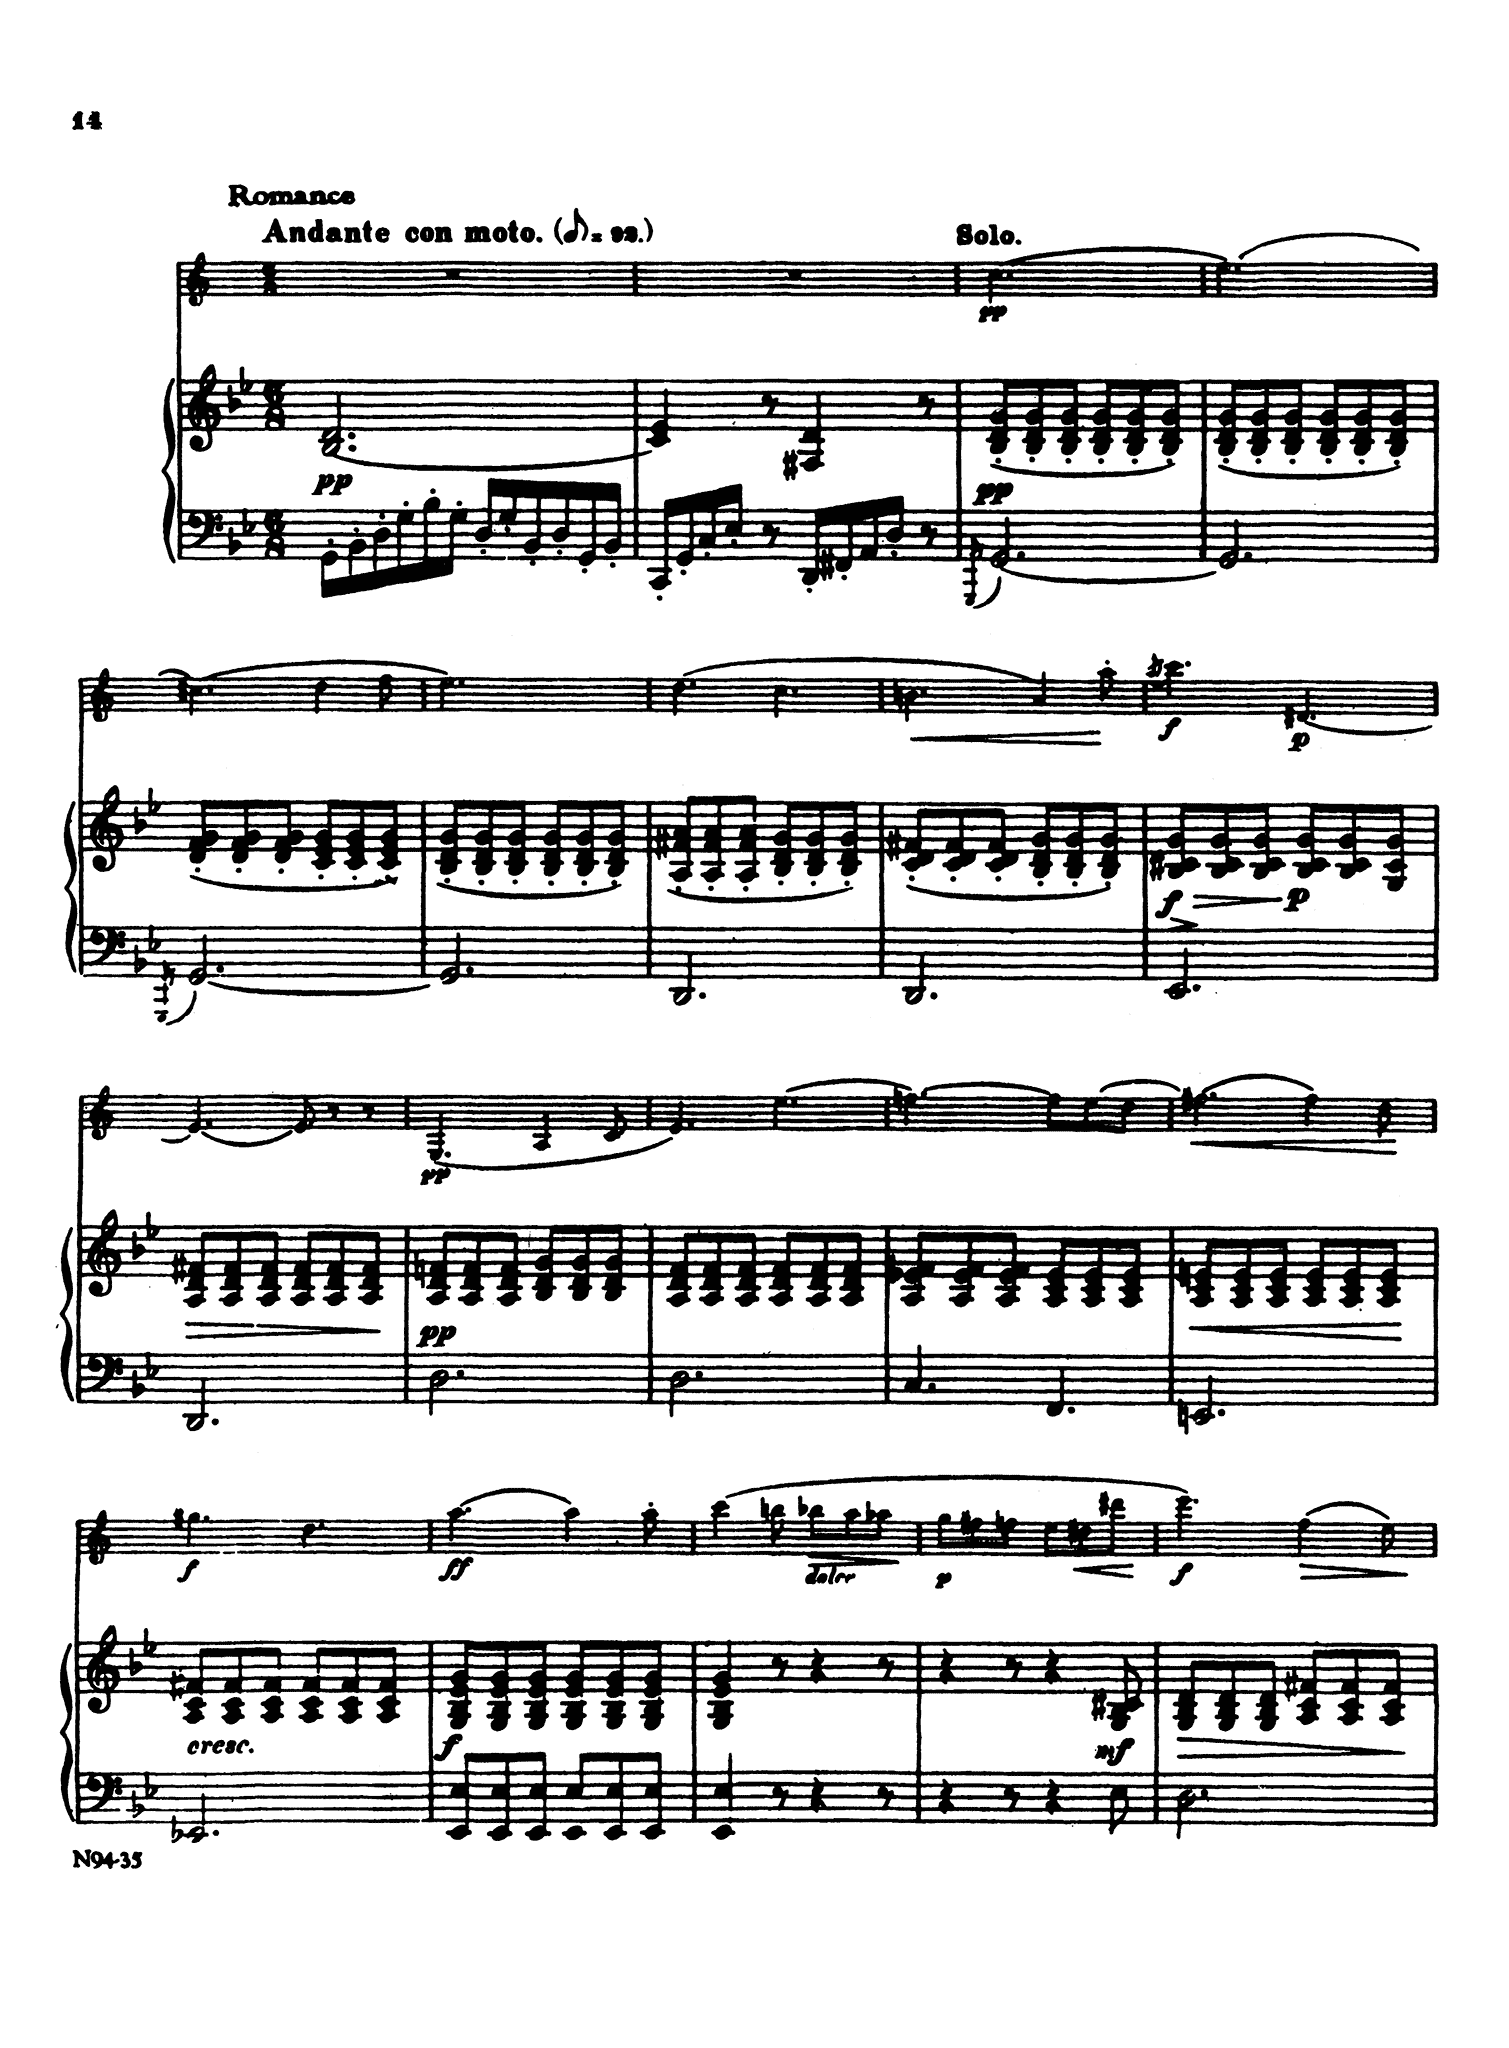 Clarinet Concerto No. 2 Op. 74 - Movement 2